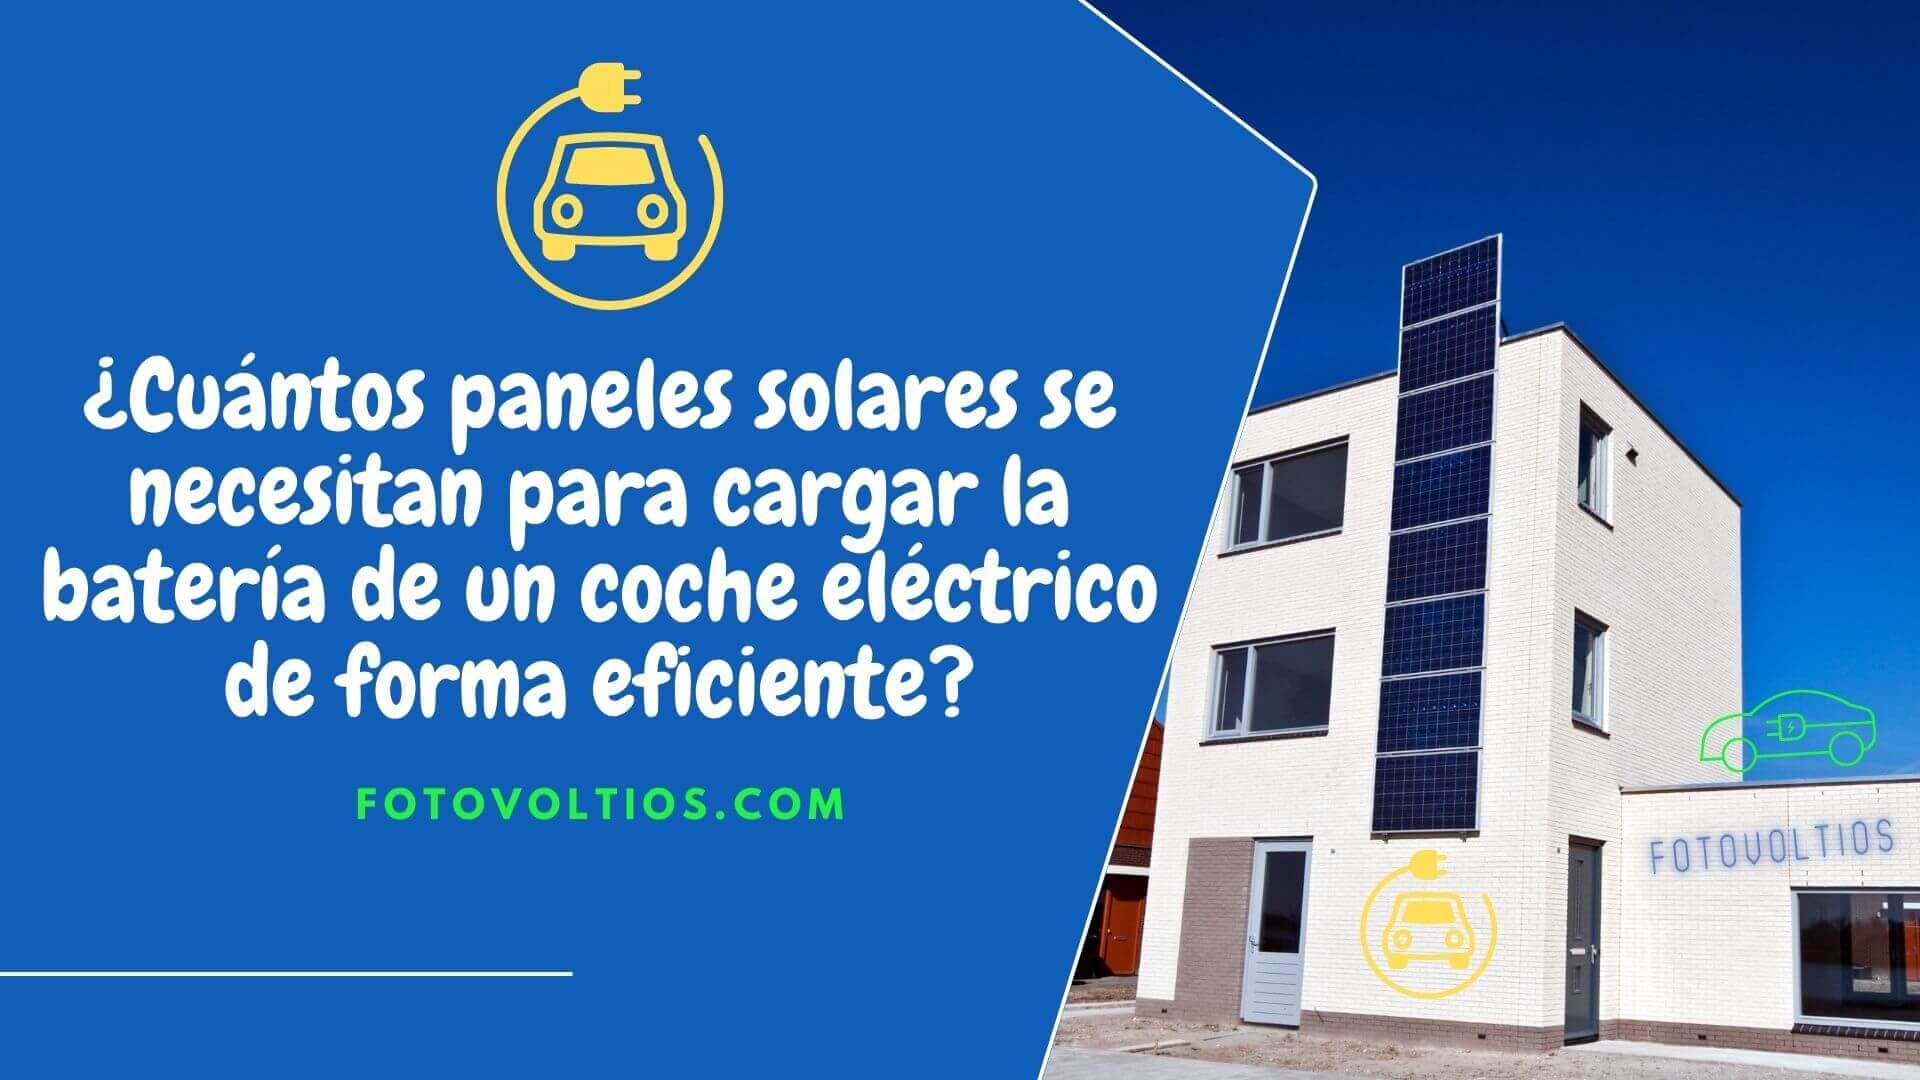 Cuántos paneles solares se necesitan para cargar la batería de un coche eléctrico de forma eficiente